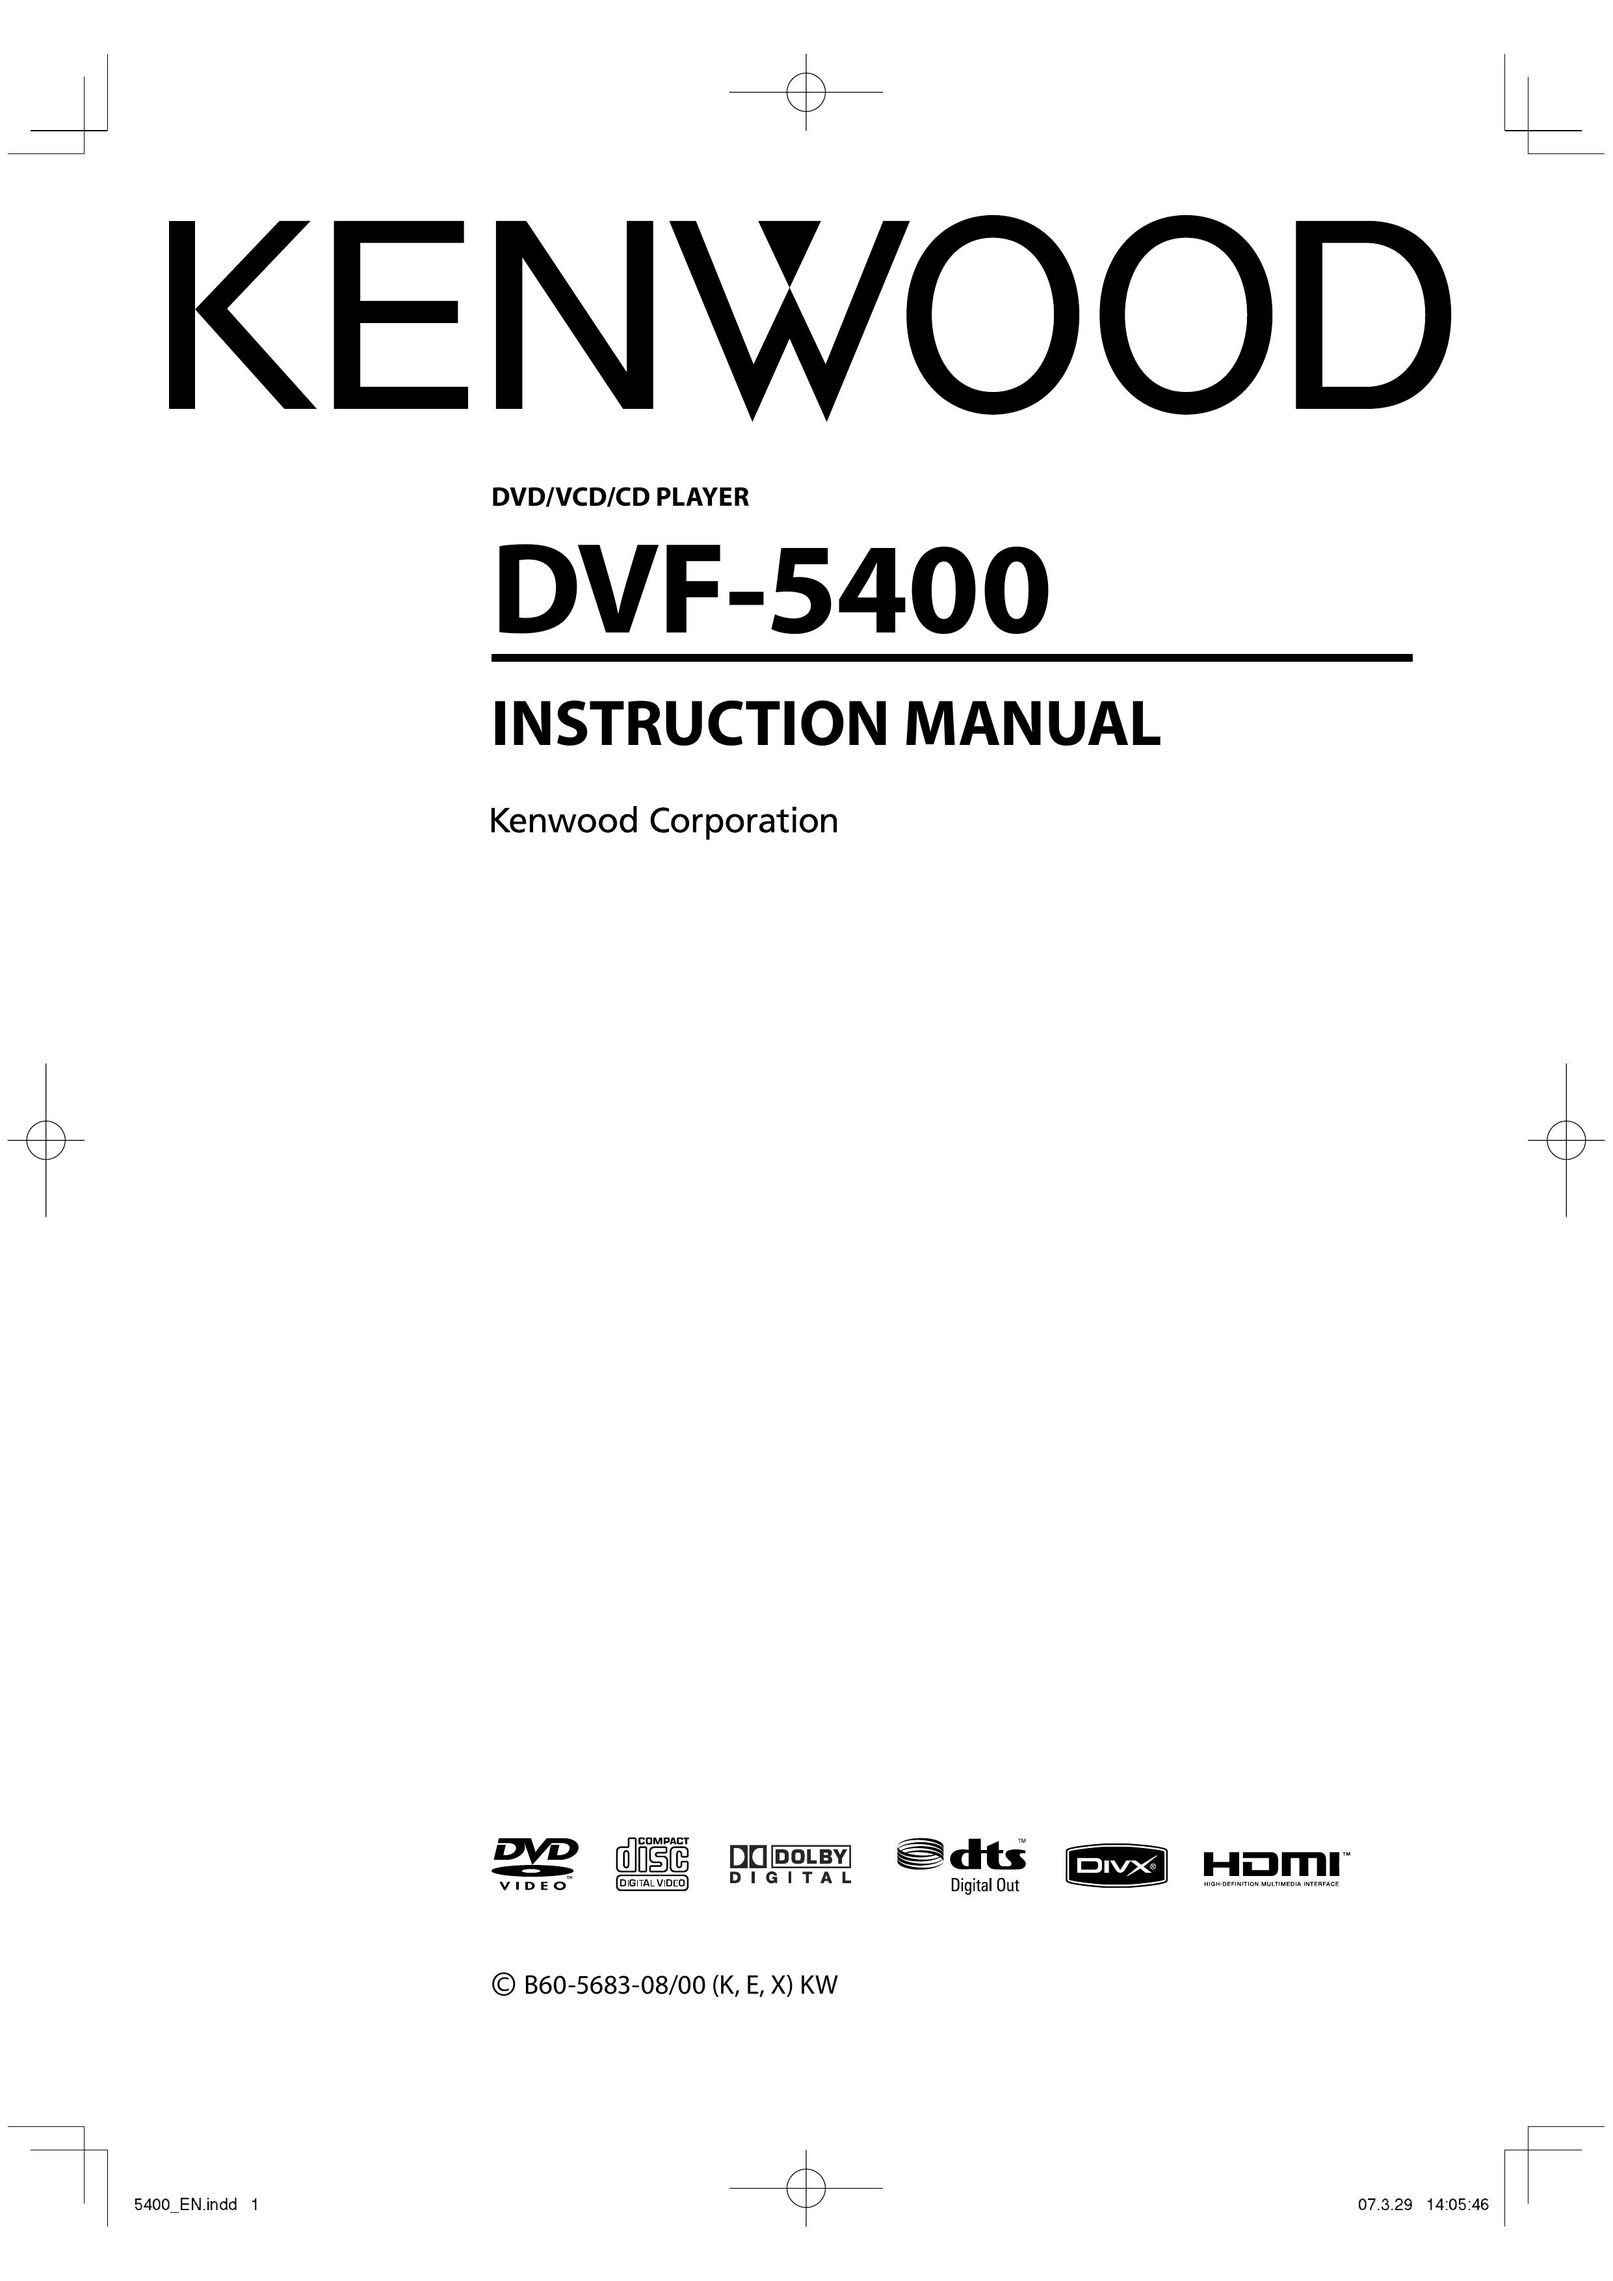 Kenwood DVF-5400 DVD Player User Manual